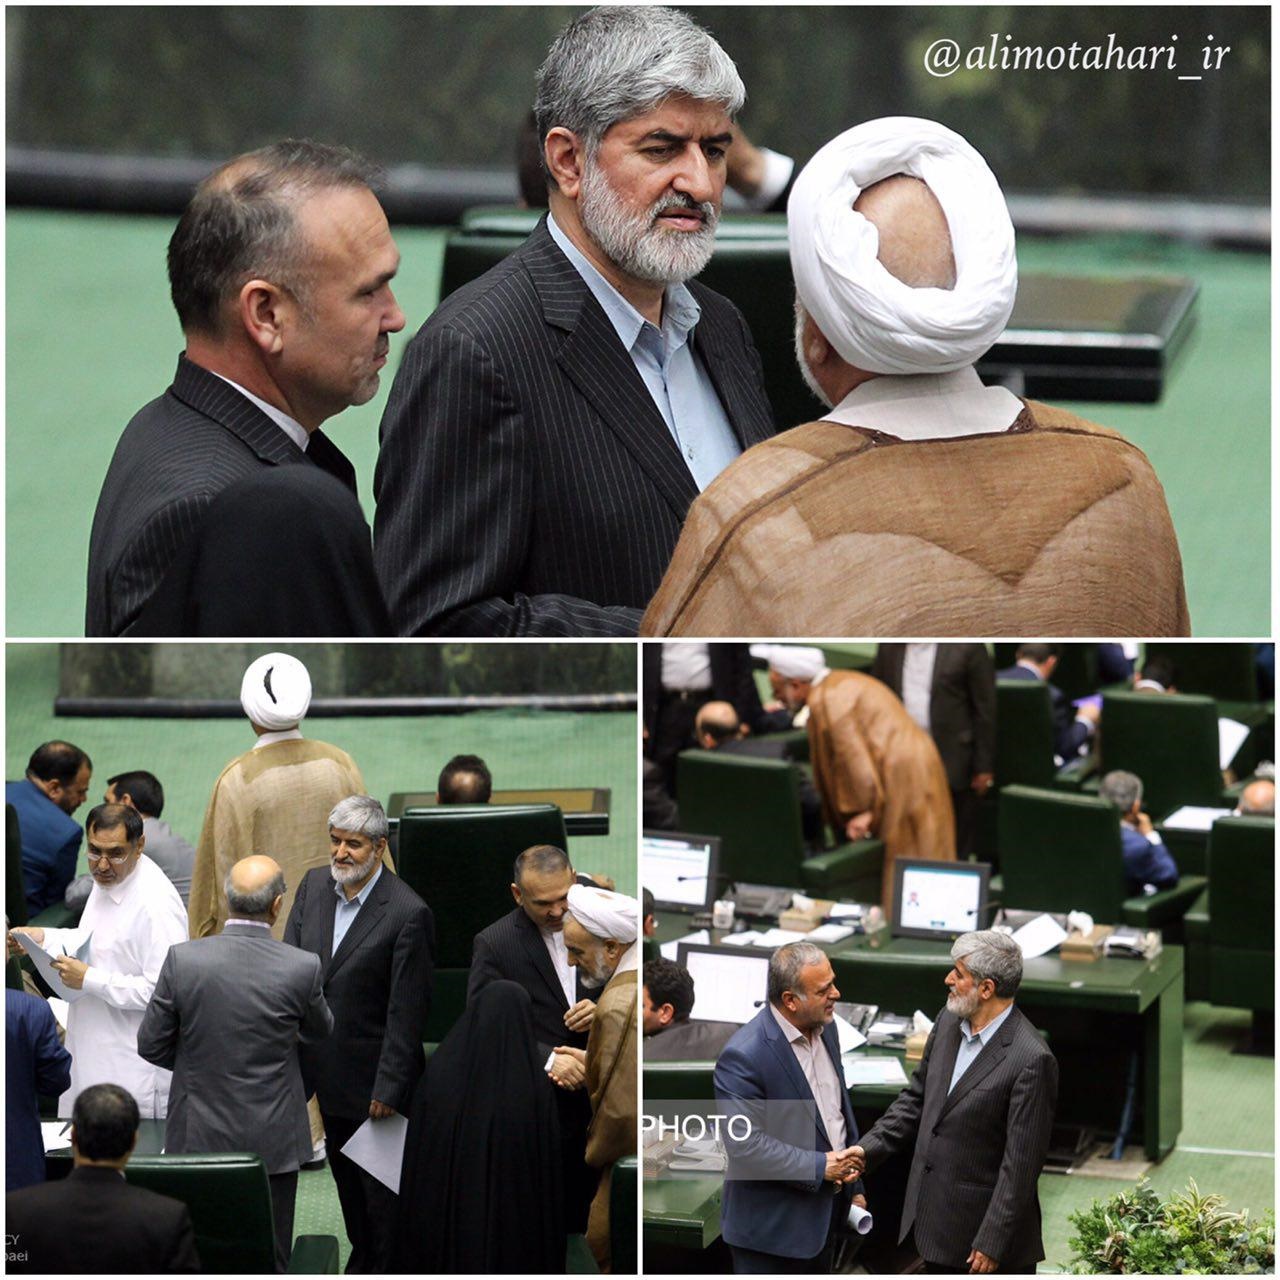 عکسی که مطهری از صحن مجلس در کانال تلگرامی‌اش منتشر کرد